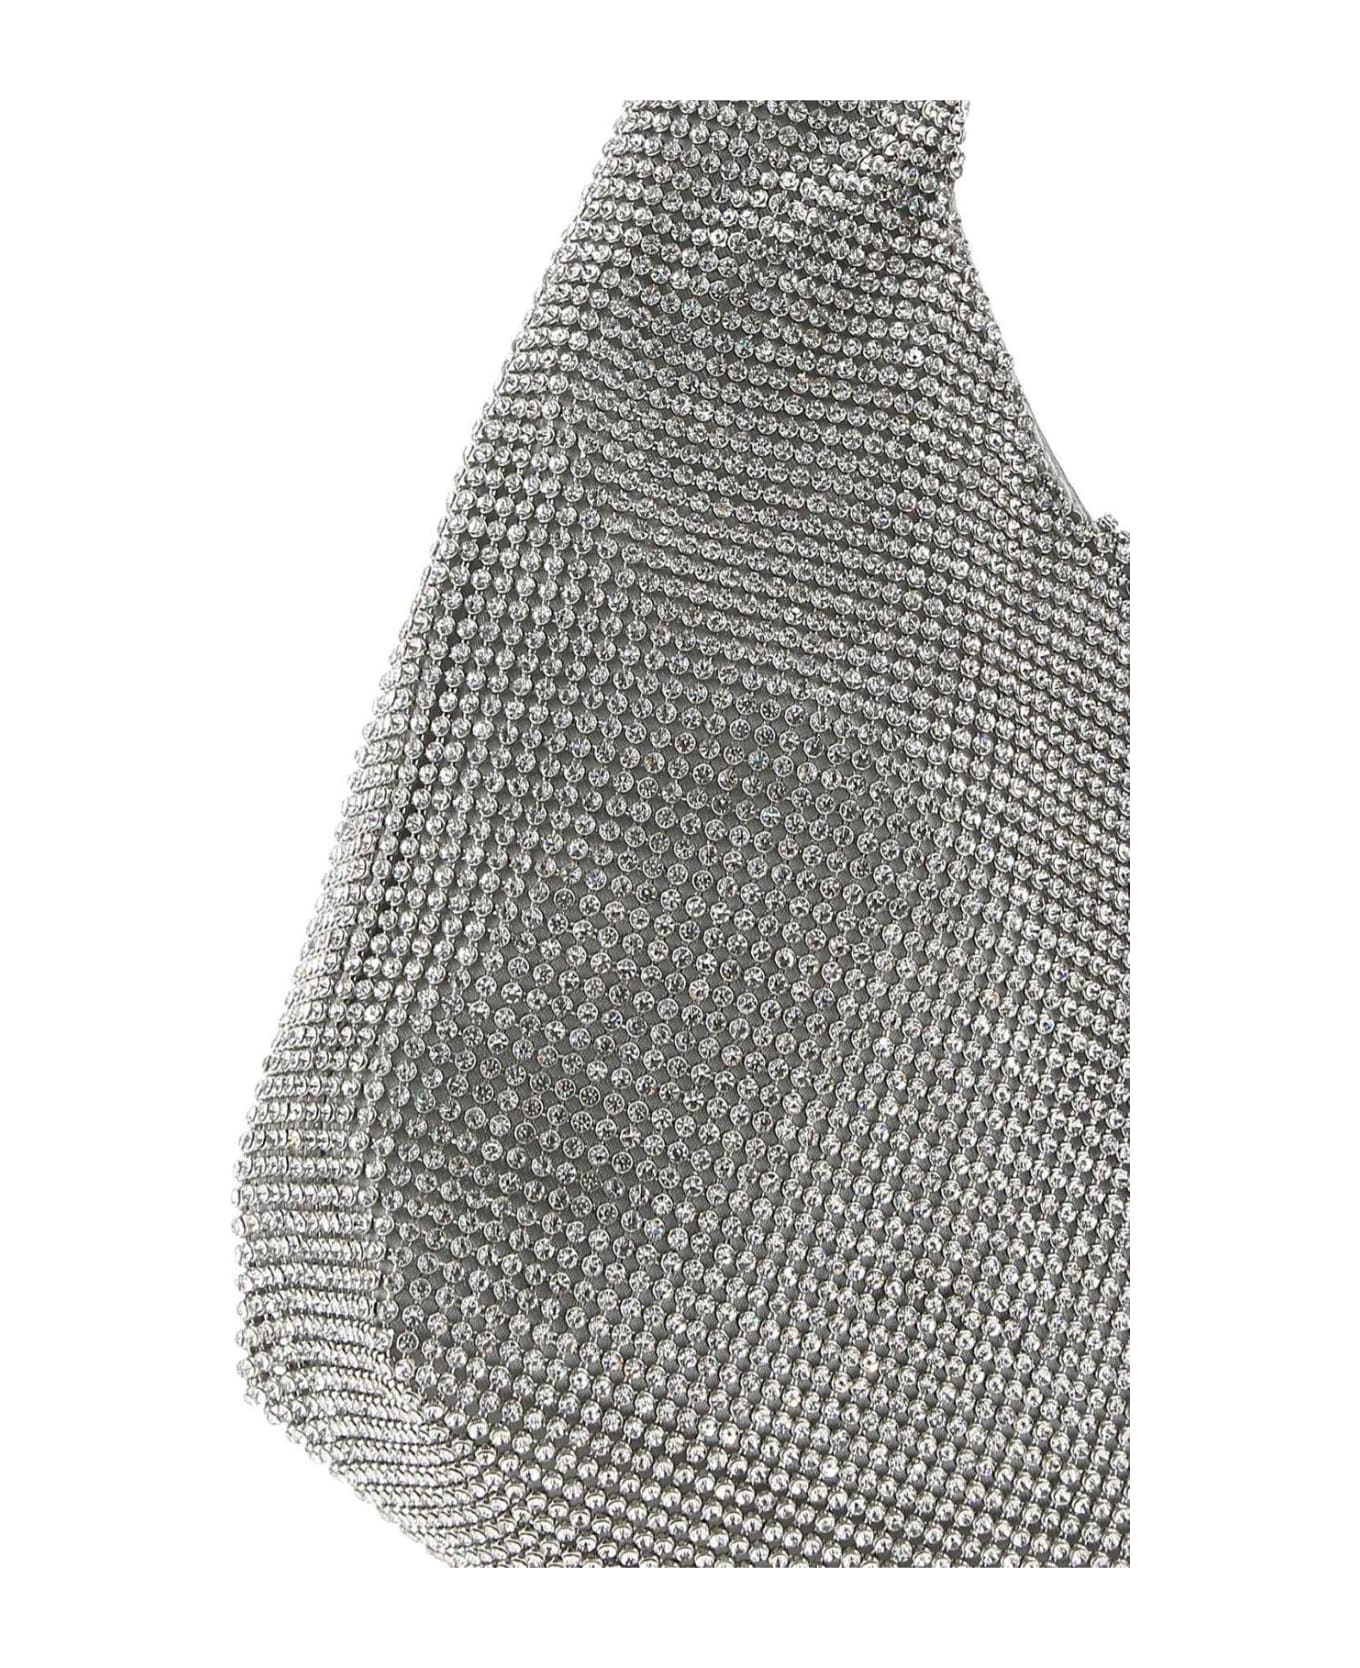 Kara Embellished Single Top Handle Shoulder Bag